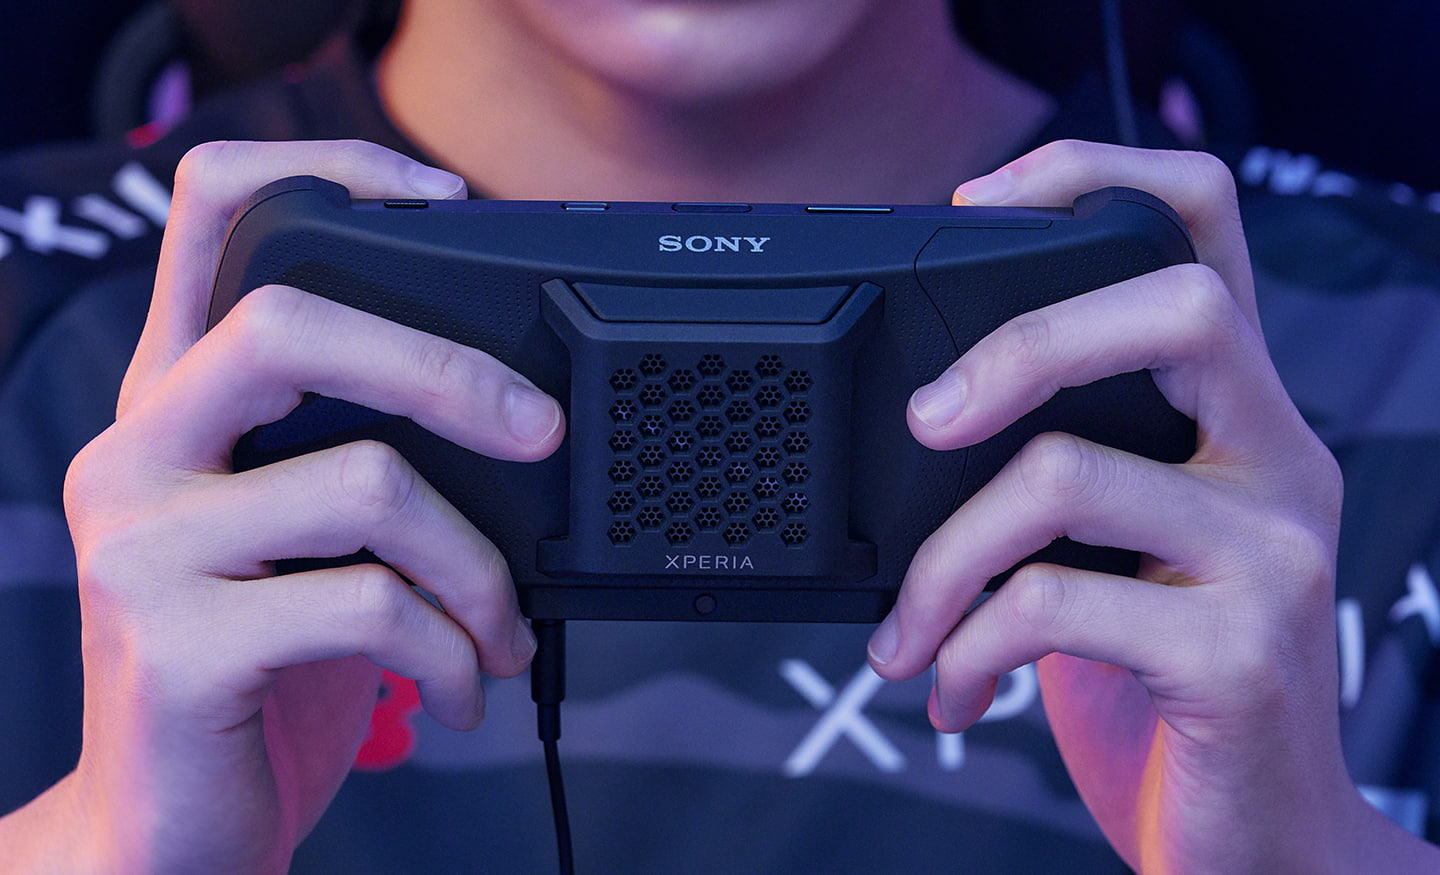 سوني (Sony) تصدر جهازا جديدا "إكسبيريا ستريم" (Xperia Stream)